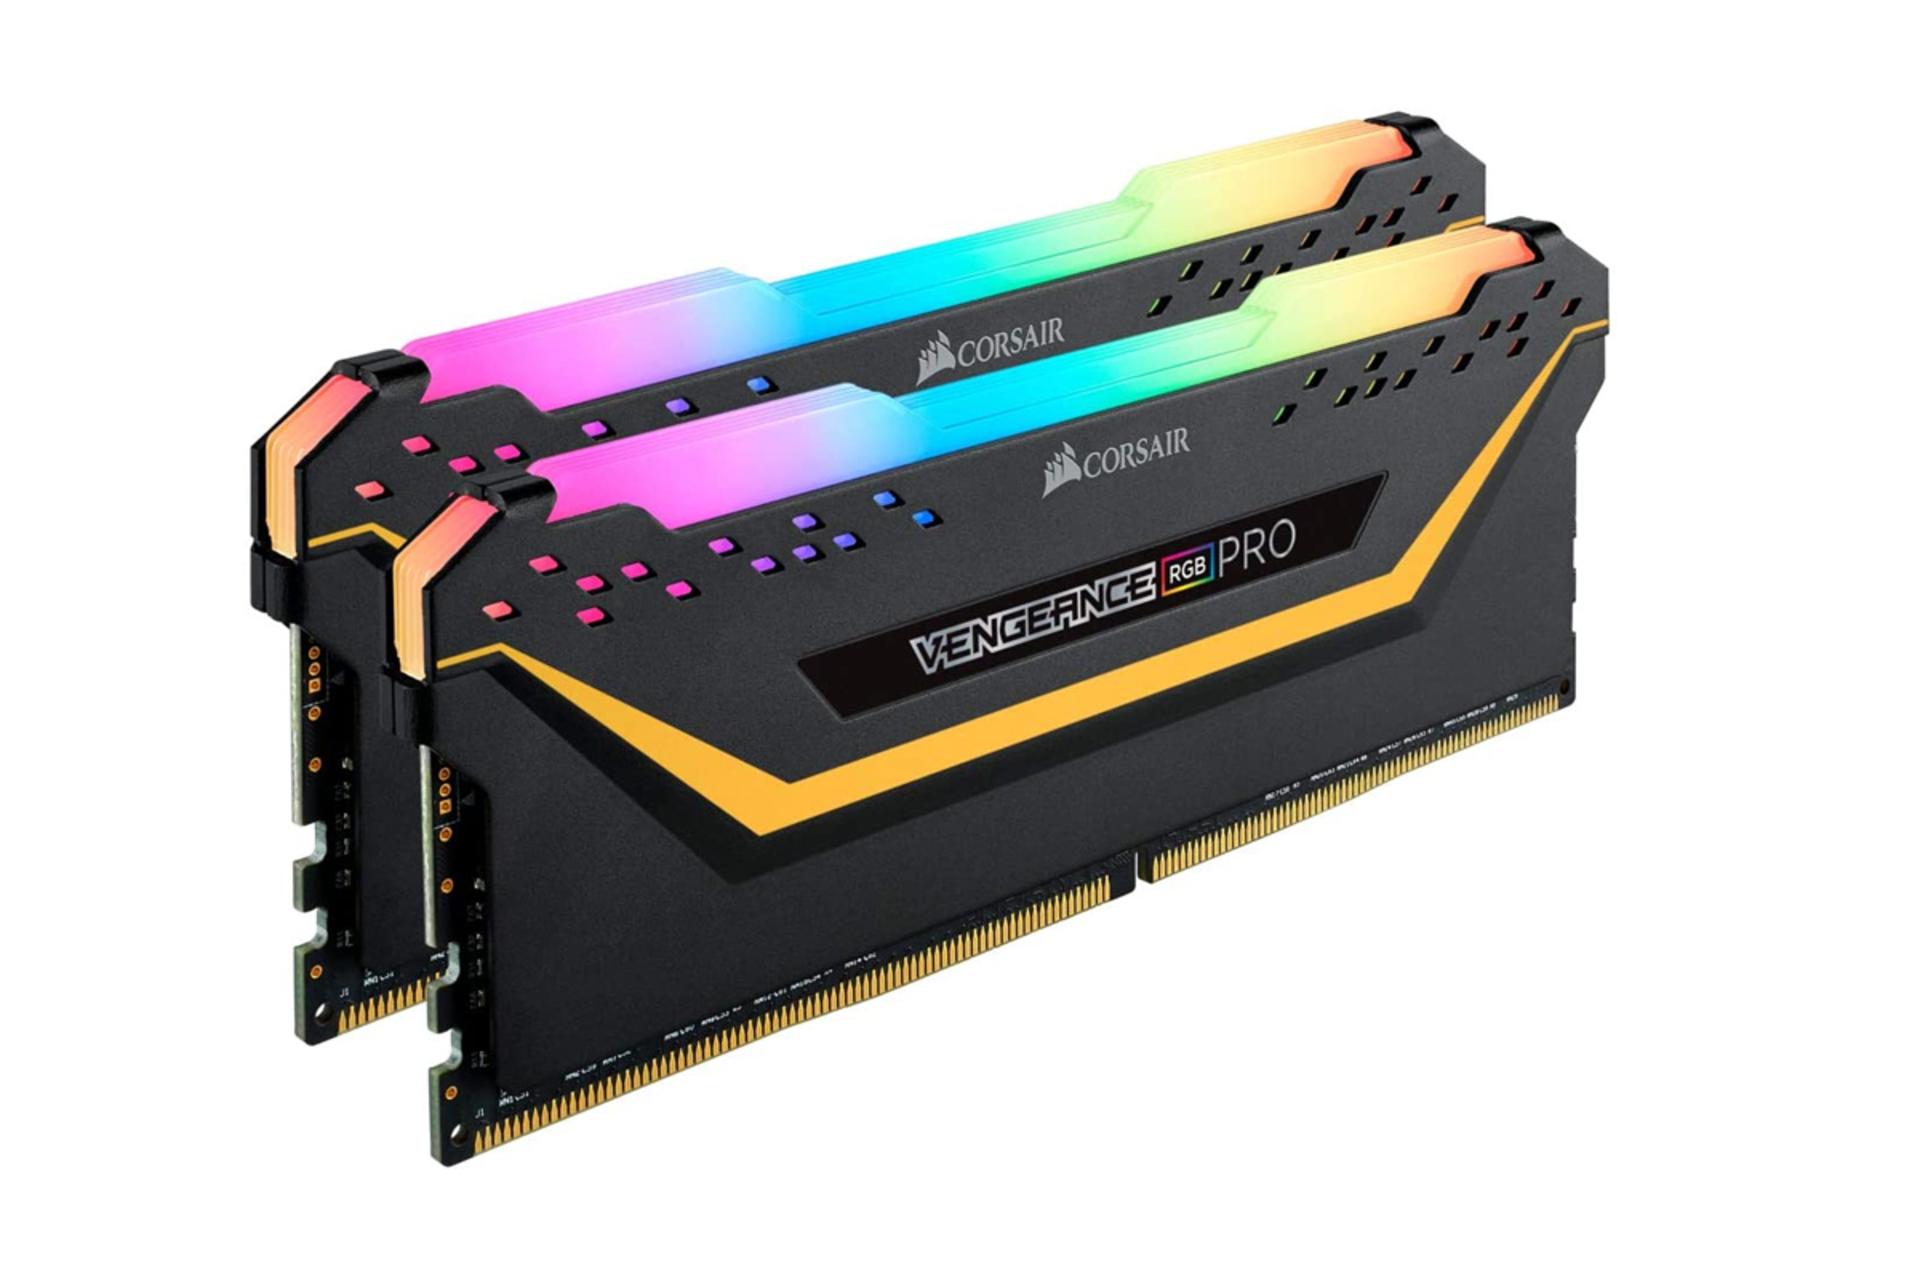 نمای کنار رم کورسیر VENGEANCE RGB PRO TUF ظرفیت 32 گیگابایت (2x16) از نوع DDR4-3200